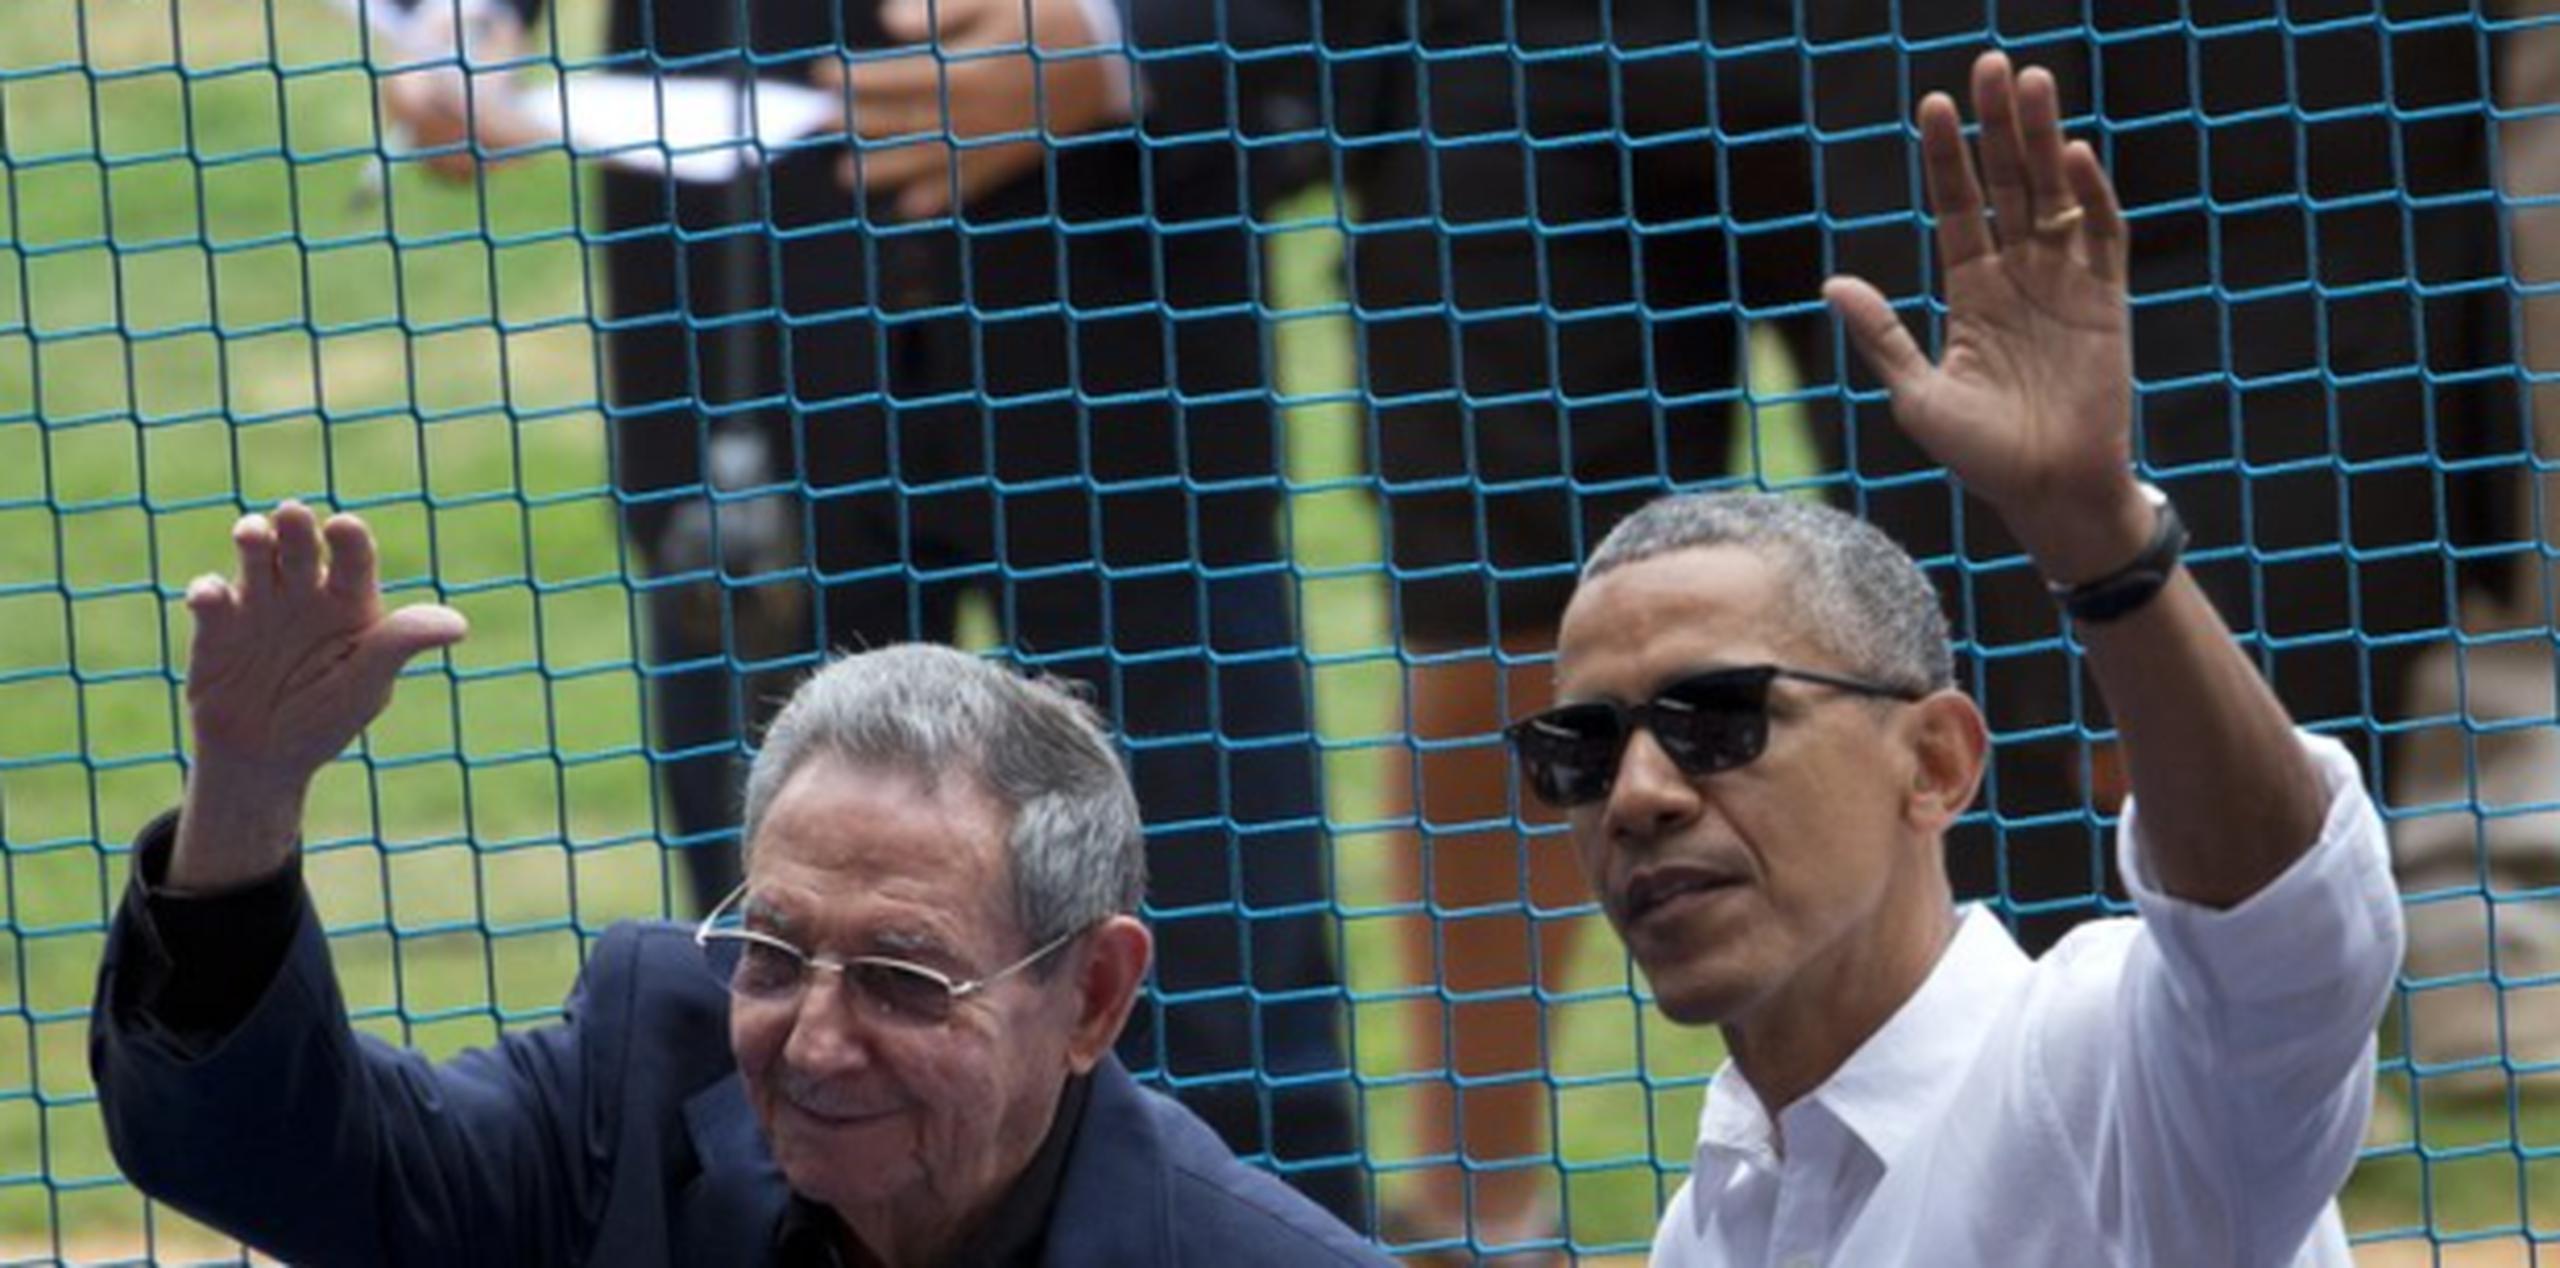 Obama durante su histórica visita a Cuba celebrada este año con el presidente cubano Raúl Castro, hermano del fallecido Fidel Castro. (Archivo)